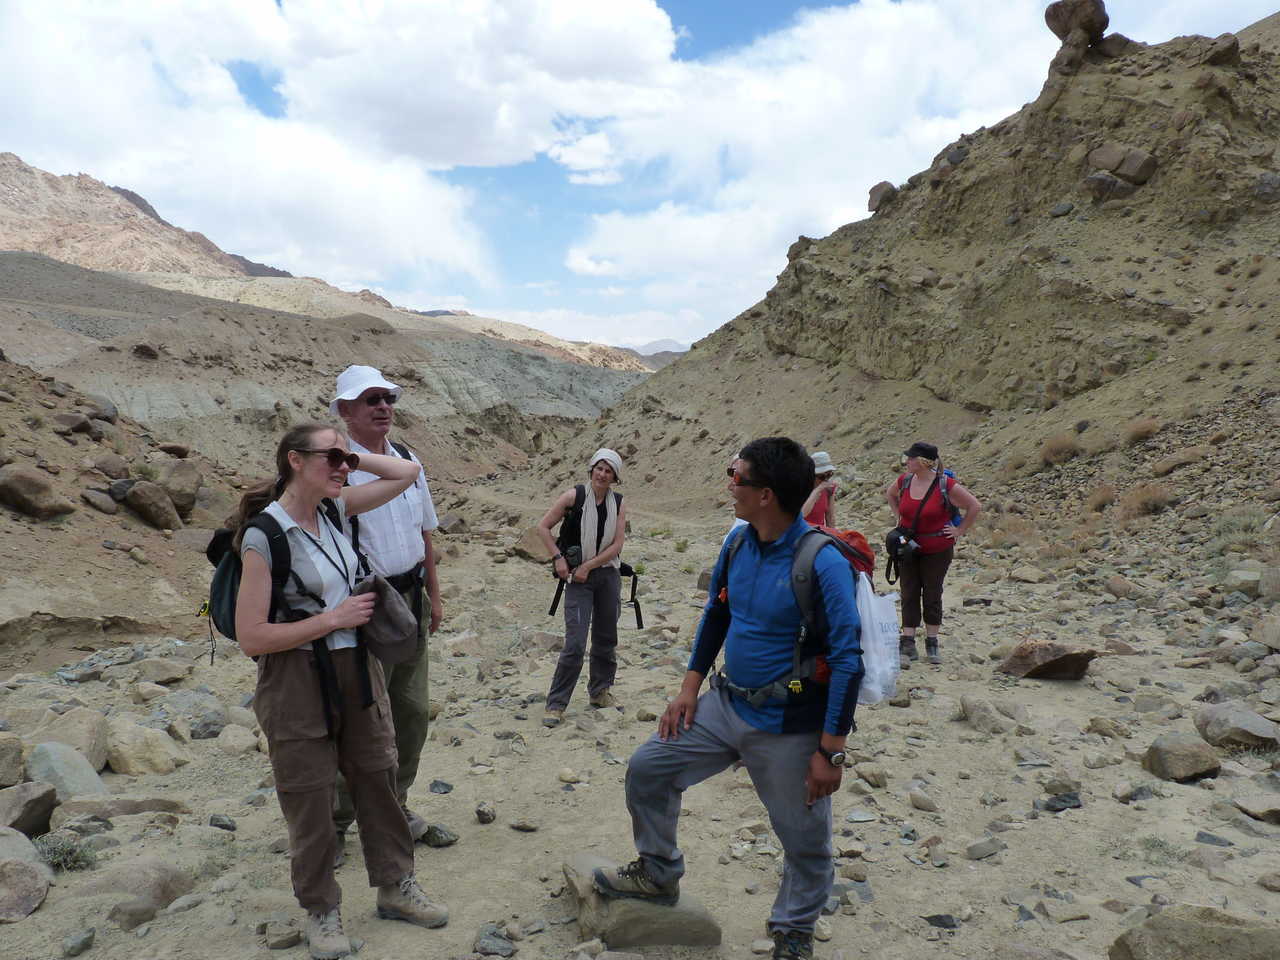 Trekkeurs dans la vallée de Sham, au Ladakh, en Inde Himalayenne